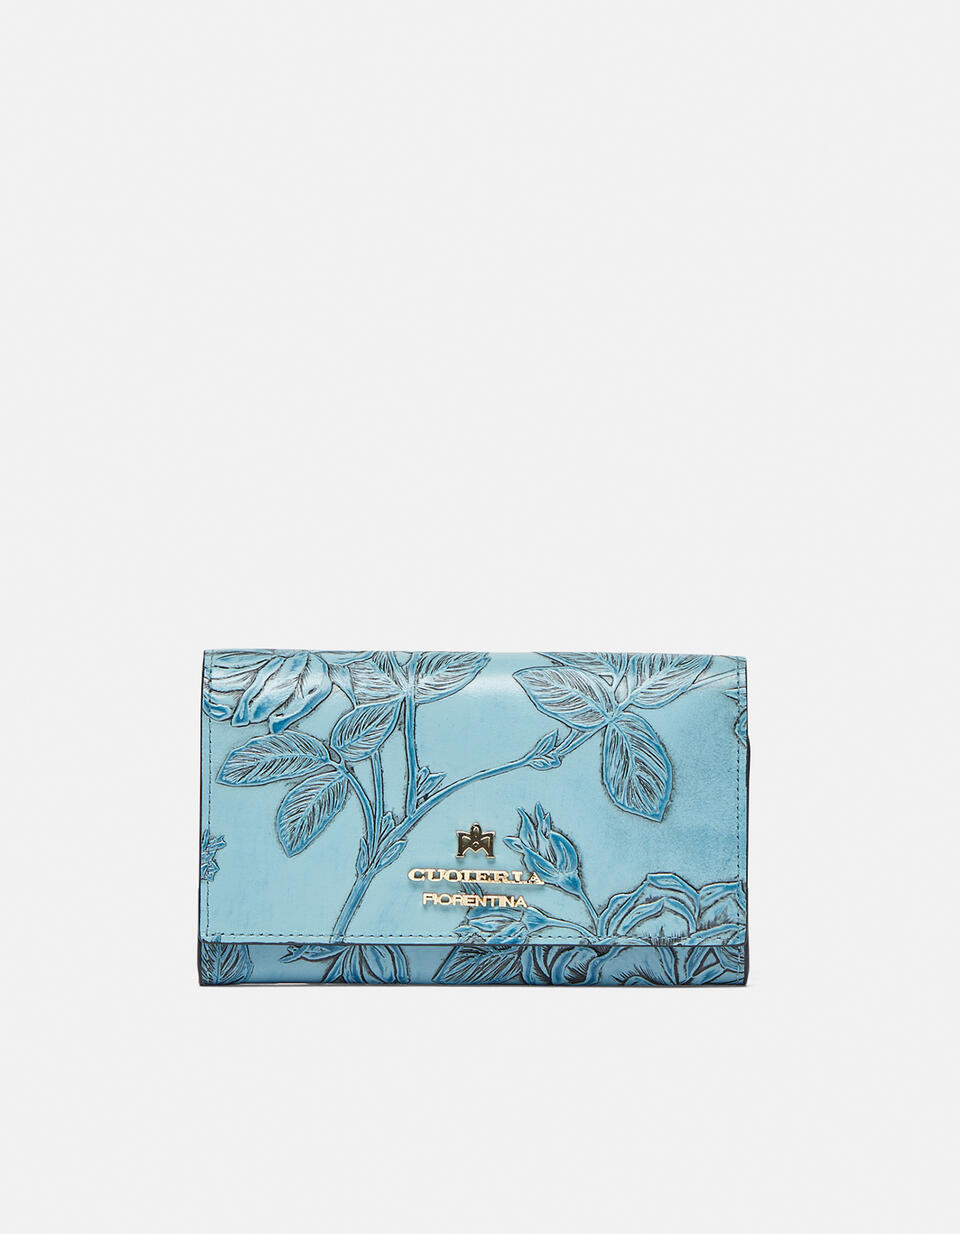 Accordian style wallet Light blue  - Women's Wallets - Women's Wallets - Wallets - Cuoieria Fiorentina